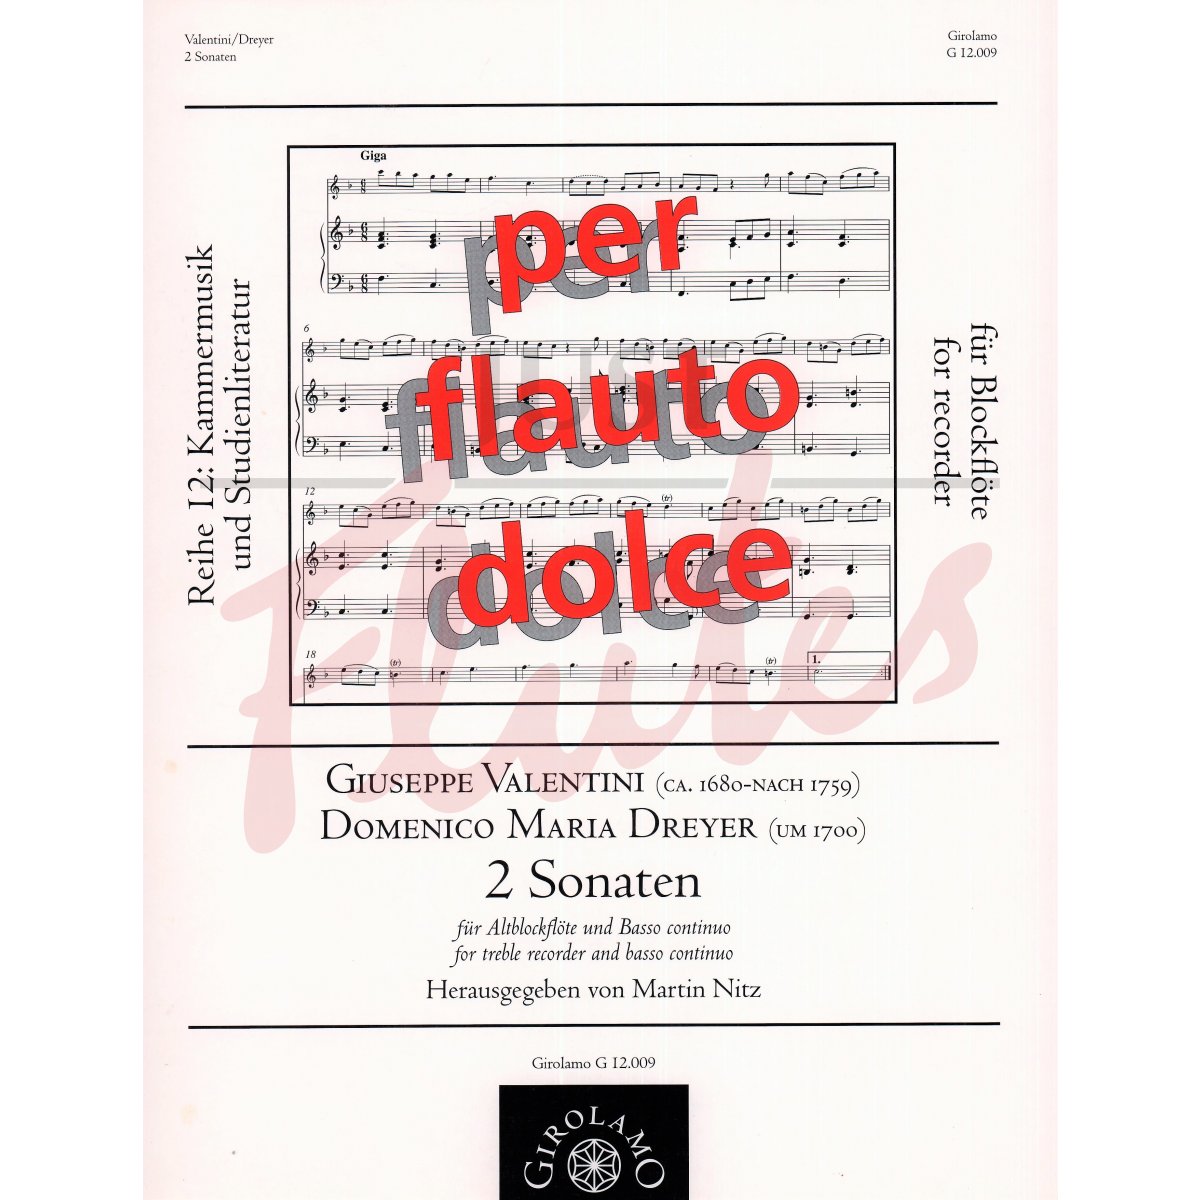 2 Sonatas for Treble Recorder and Basso Continuo